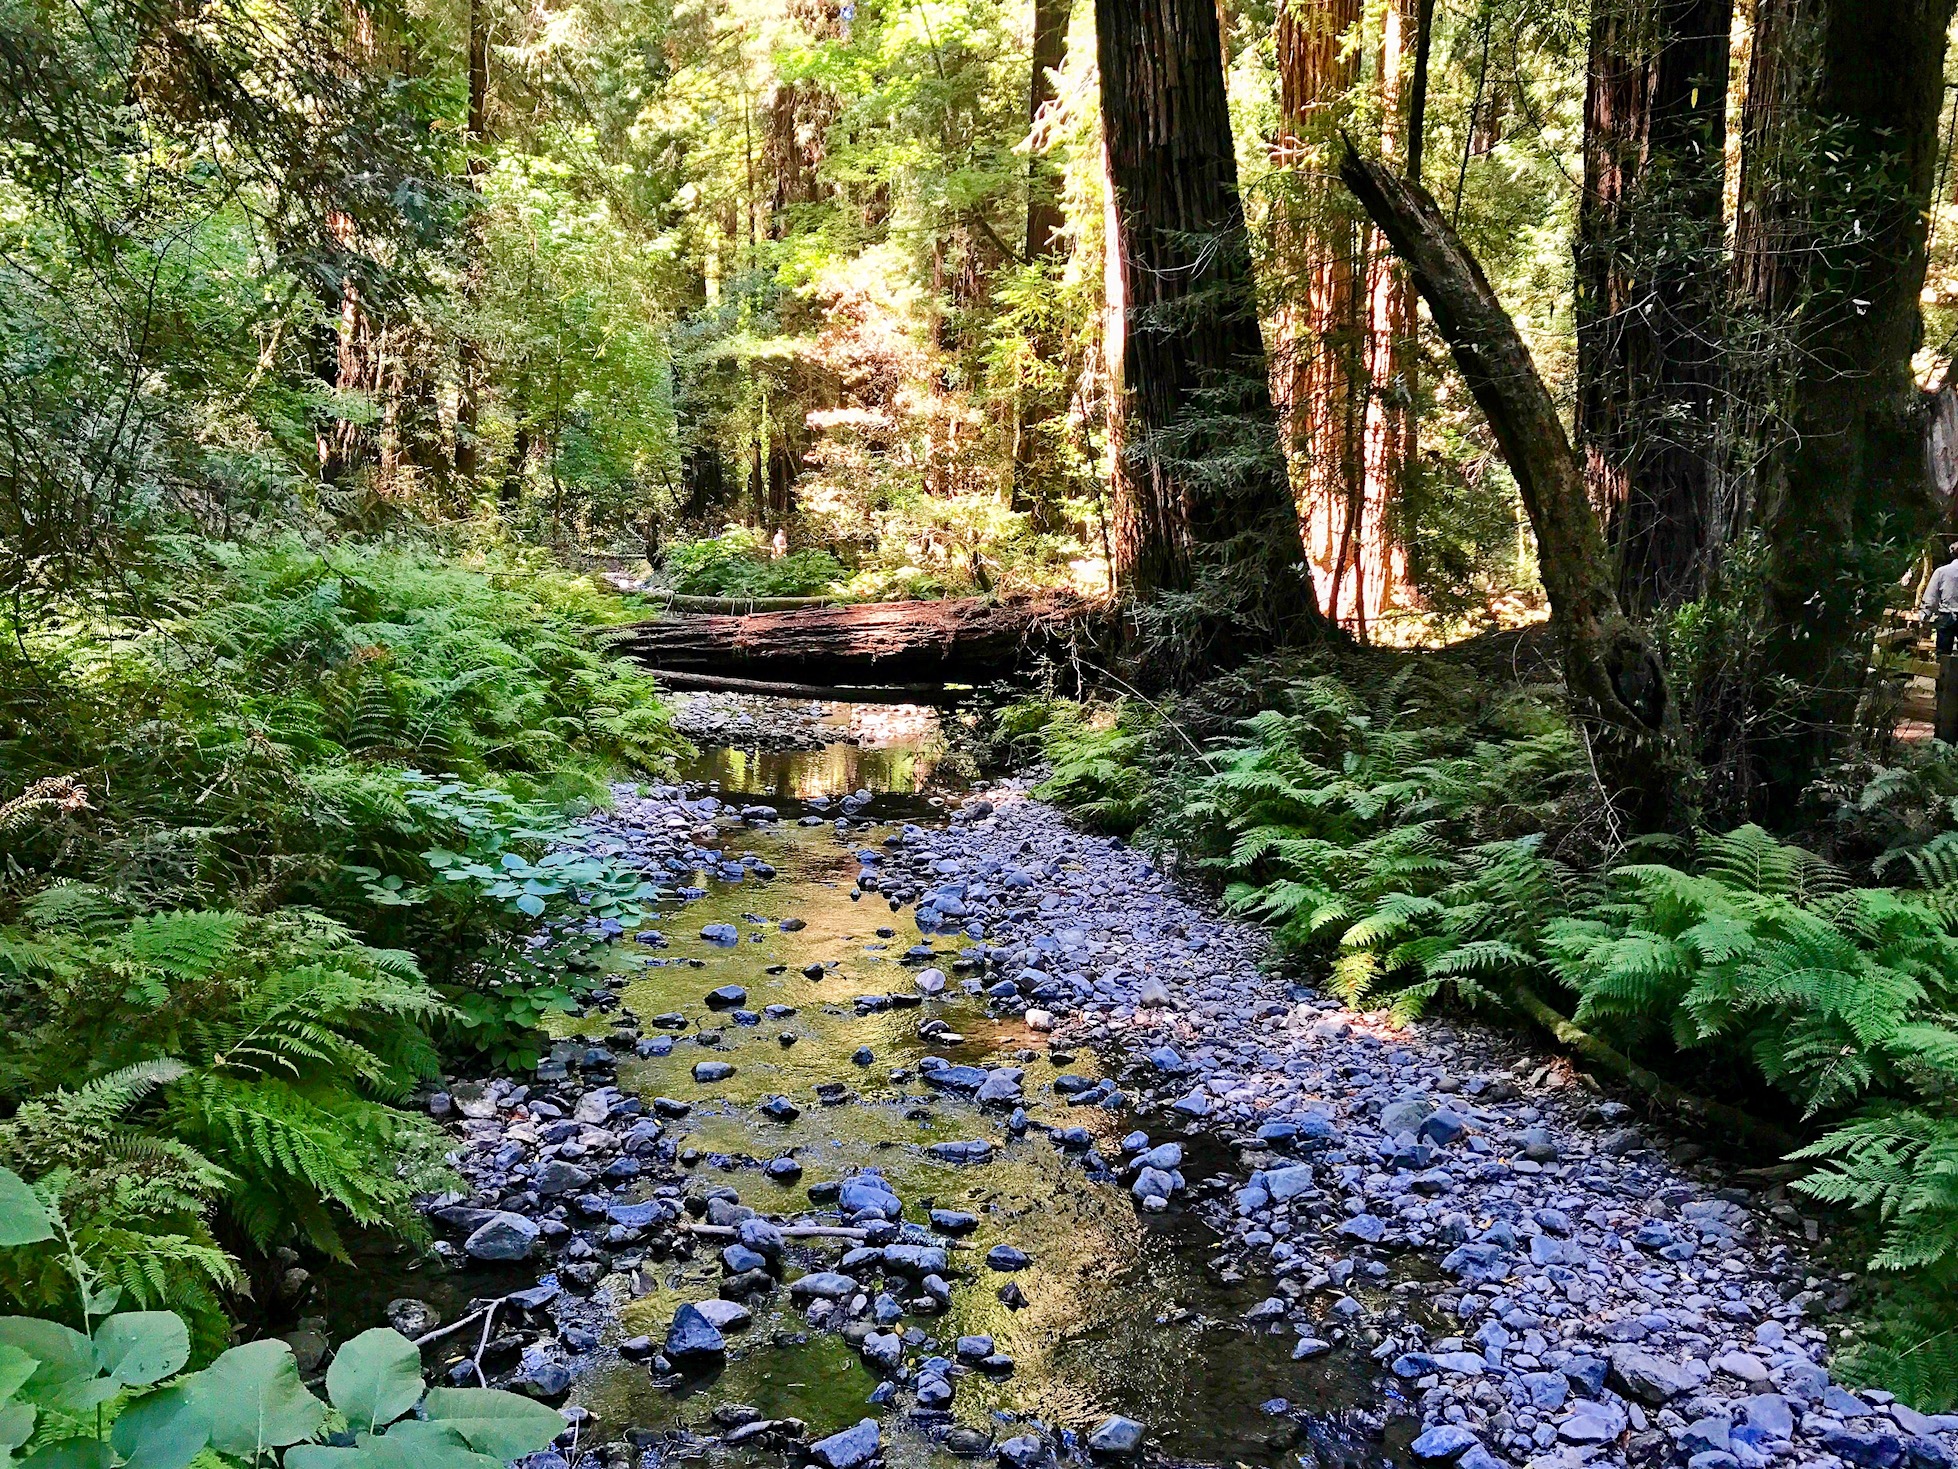 Redwood Creek